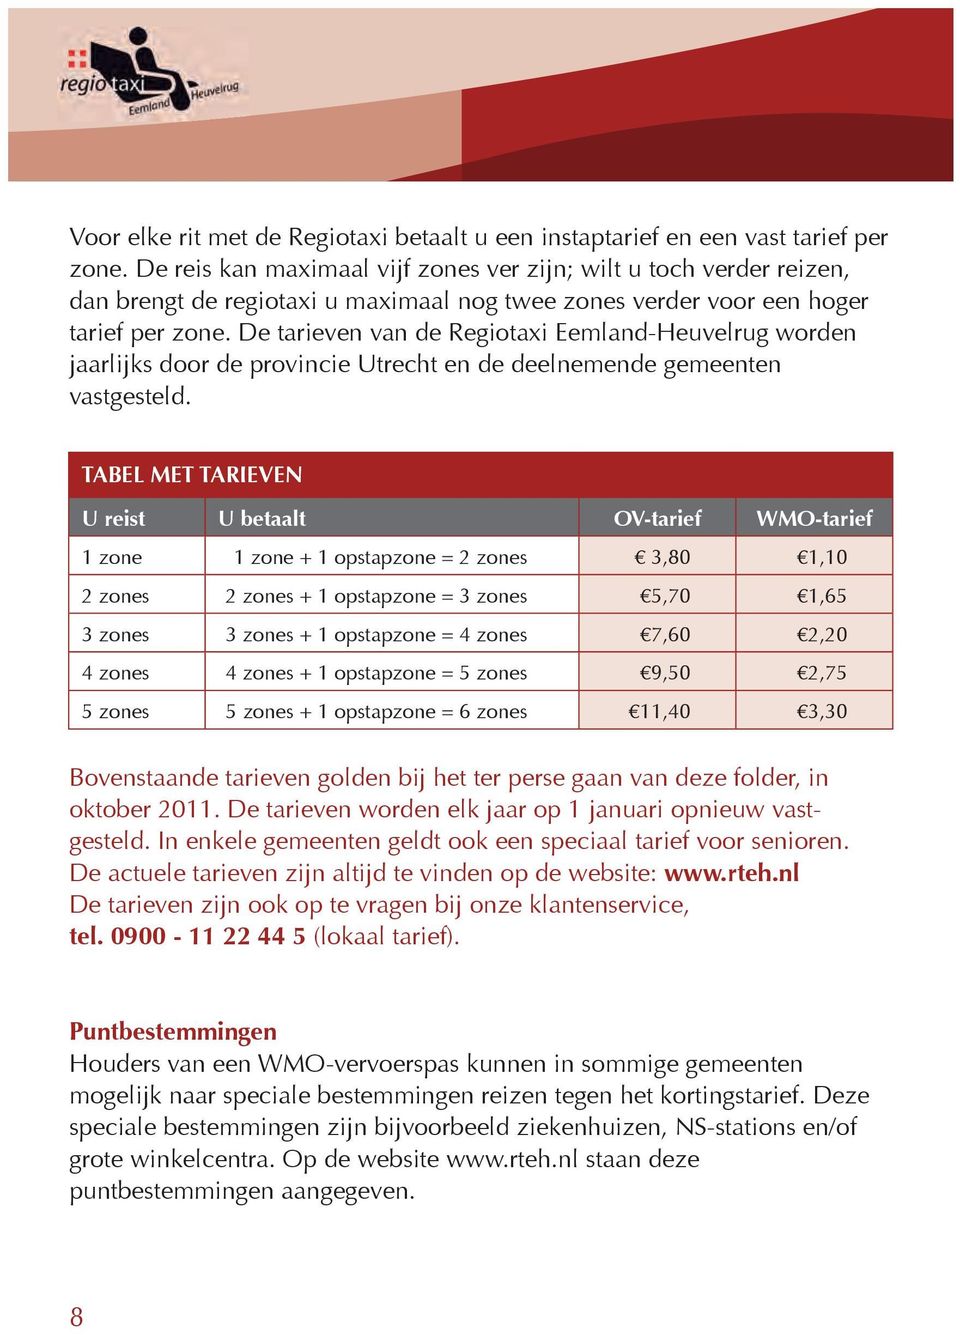 De tarieven van de Regiotaxi Eemland-Heuvelrug worden jaarlijks door de provincie Utrecht en de deelnemende gemeenten vastgesteld.